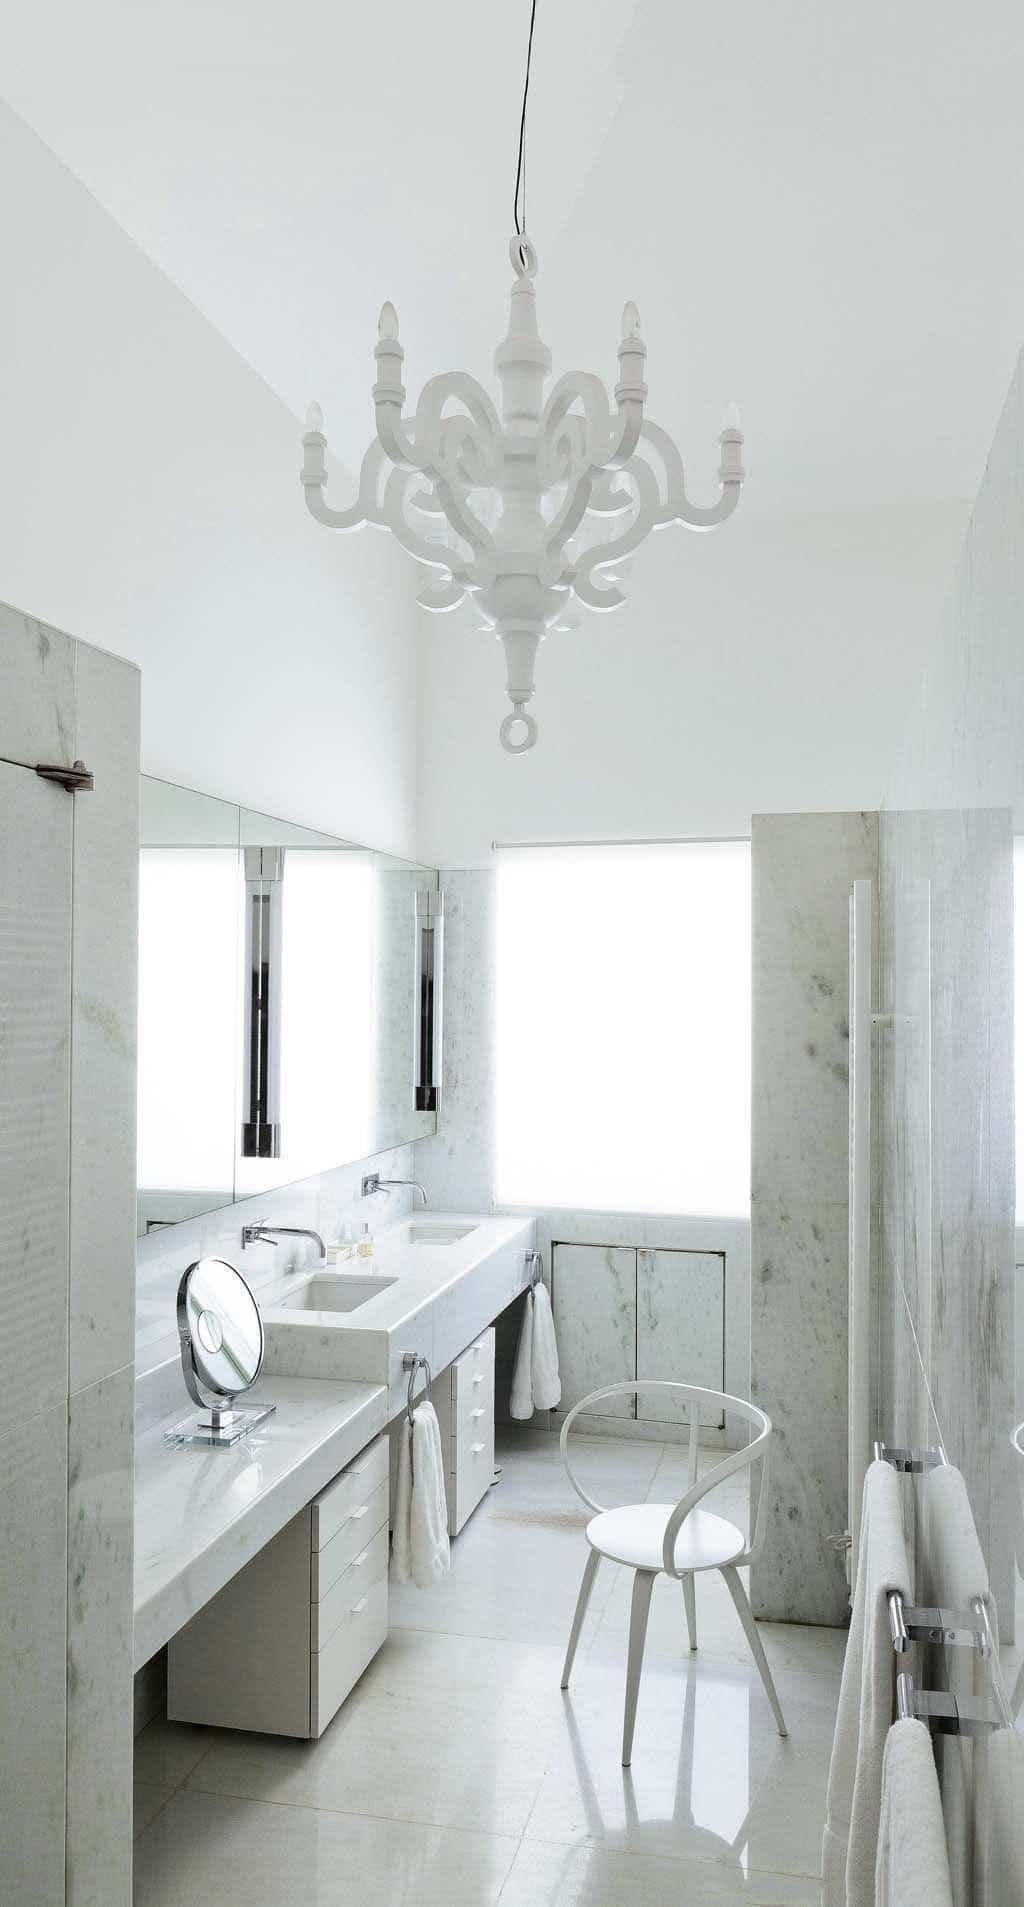 Salle de bain marbre